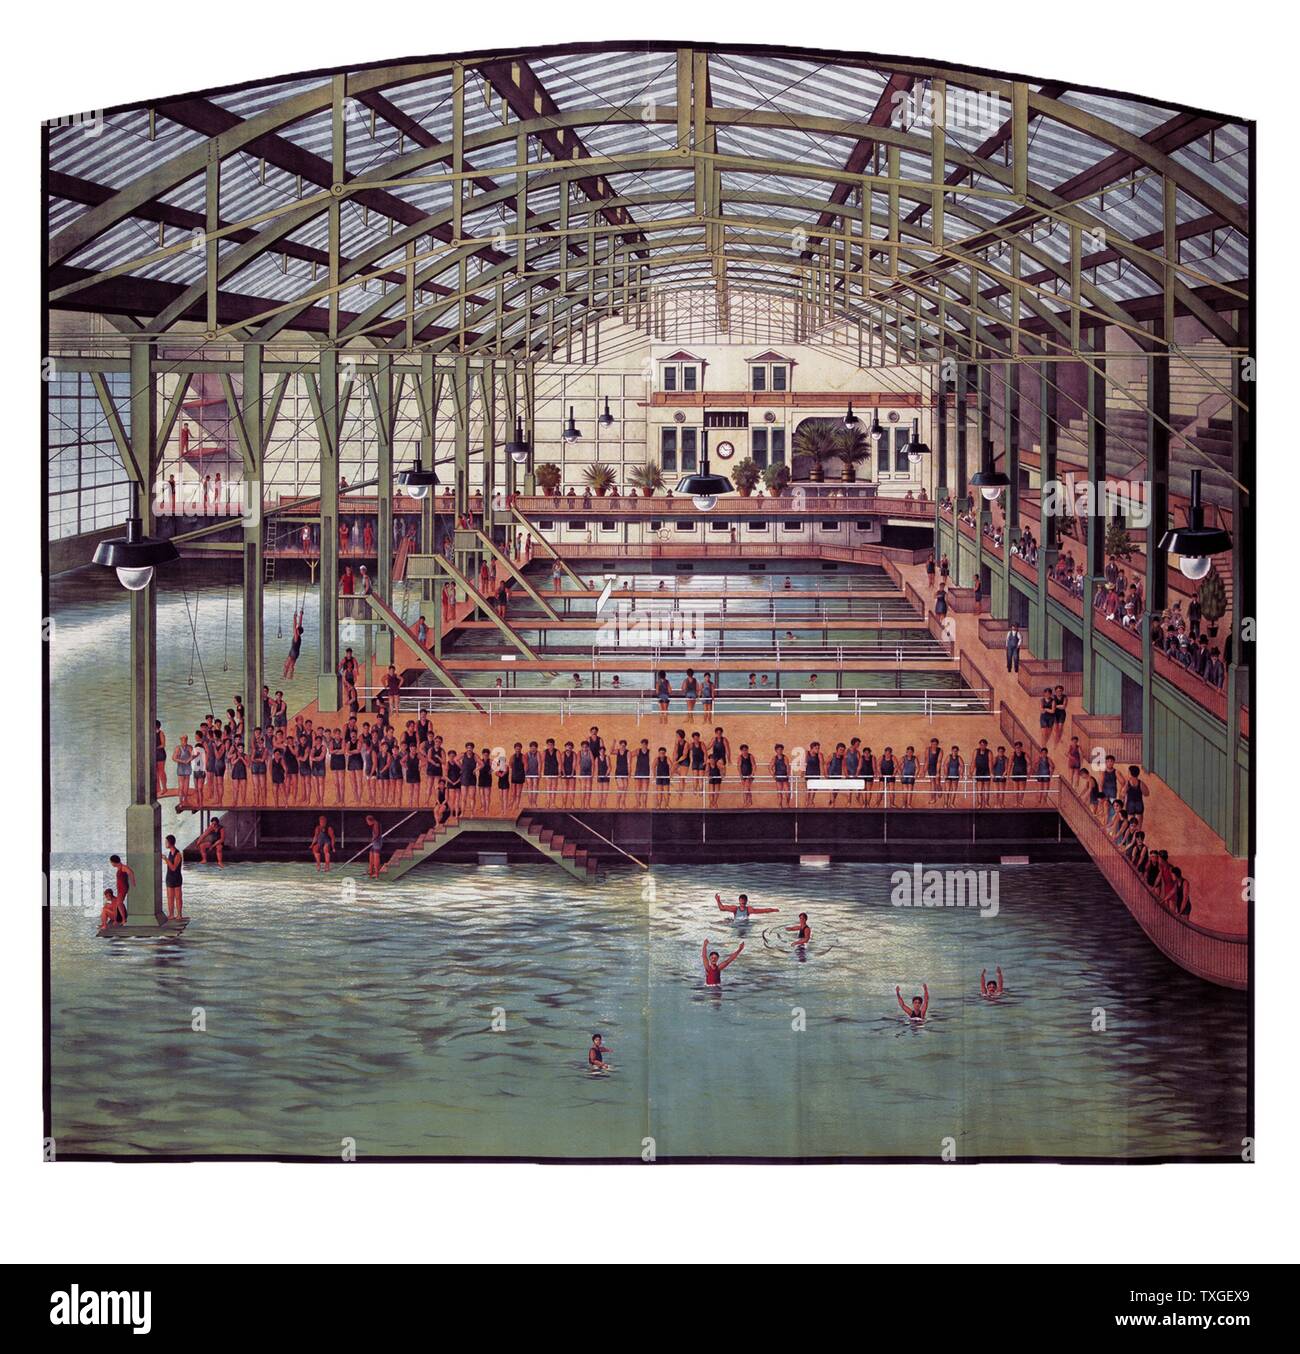 Les bains Sutro, un grand complexe de piscines privées près de Seal Rock à San Francisco, Californie, construit à la fin du xixe siècle, 1910 Banque D'Images